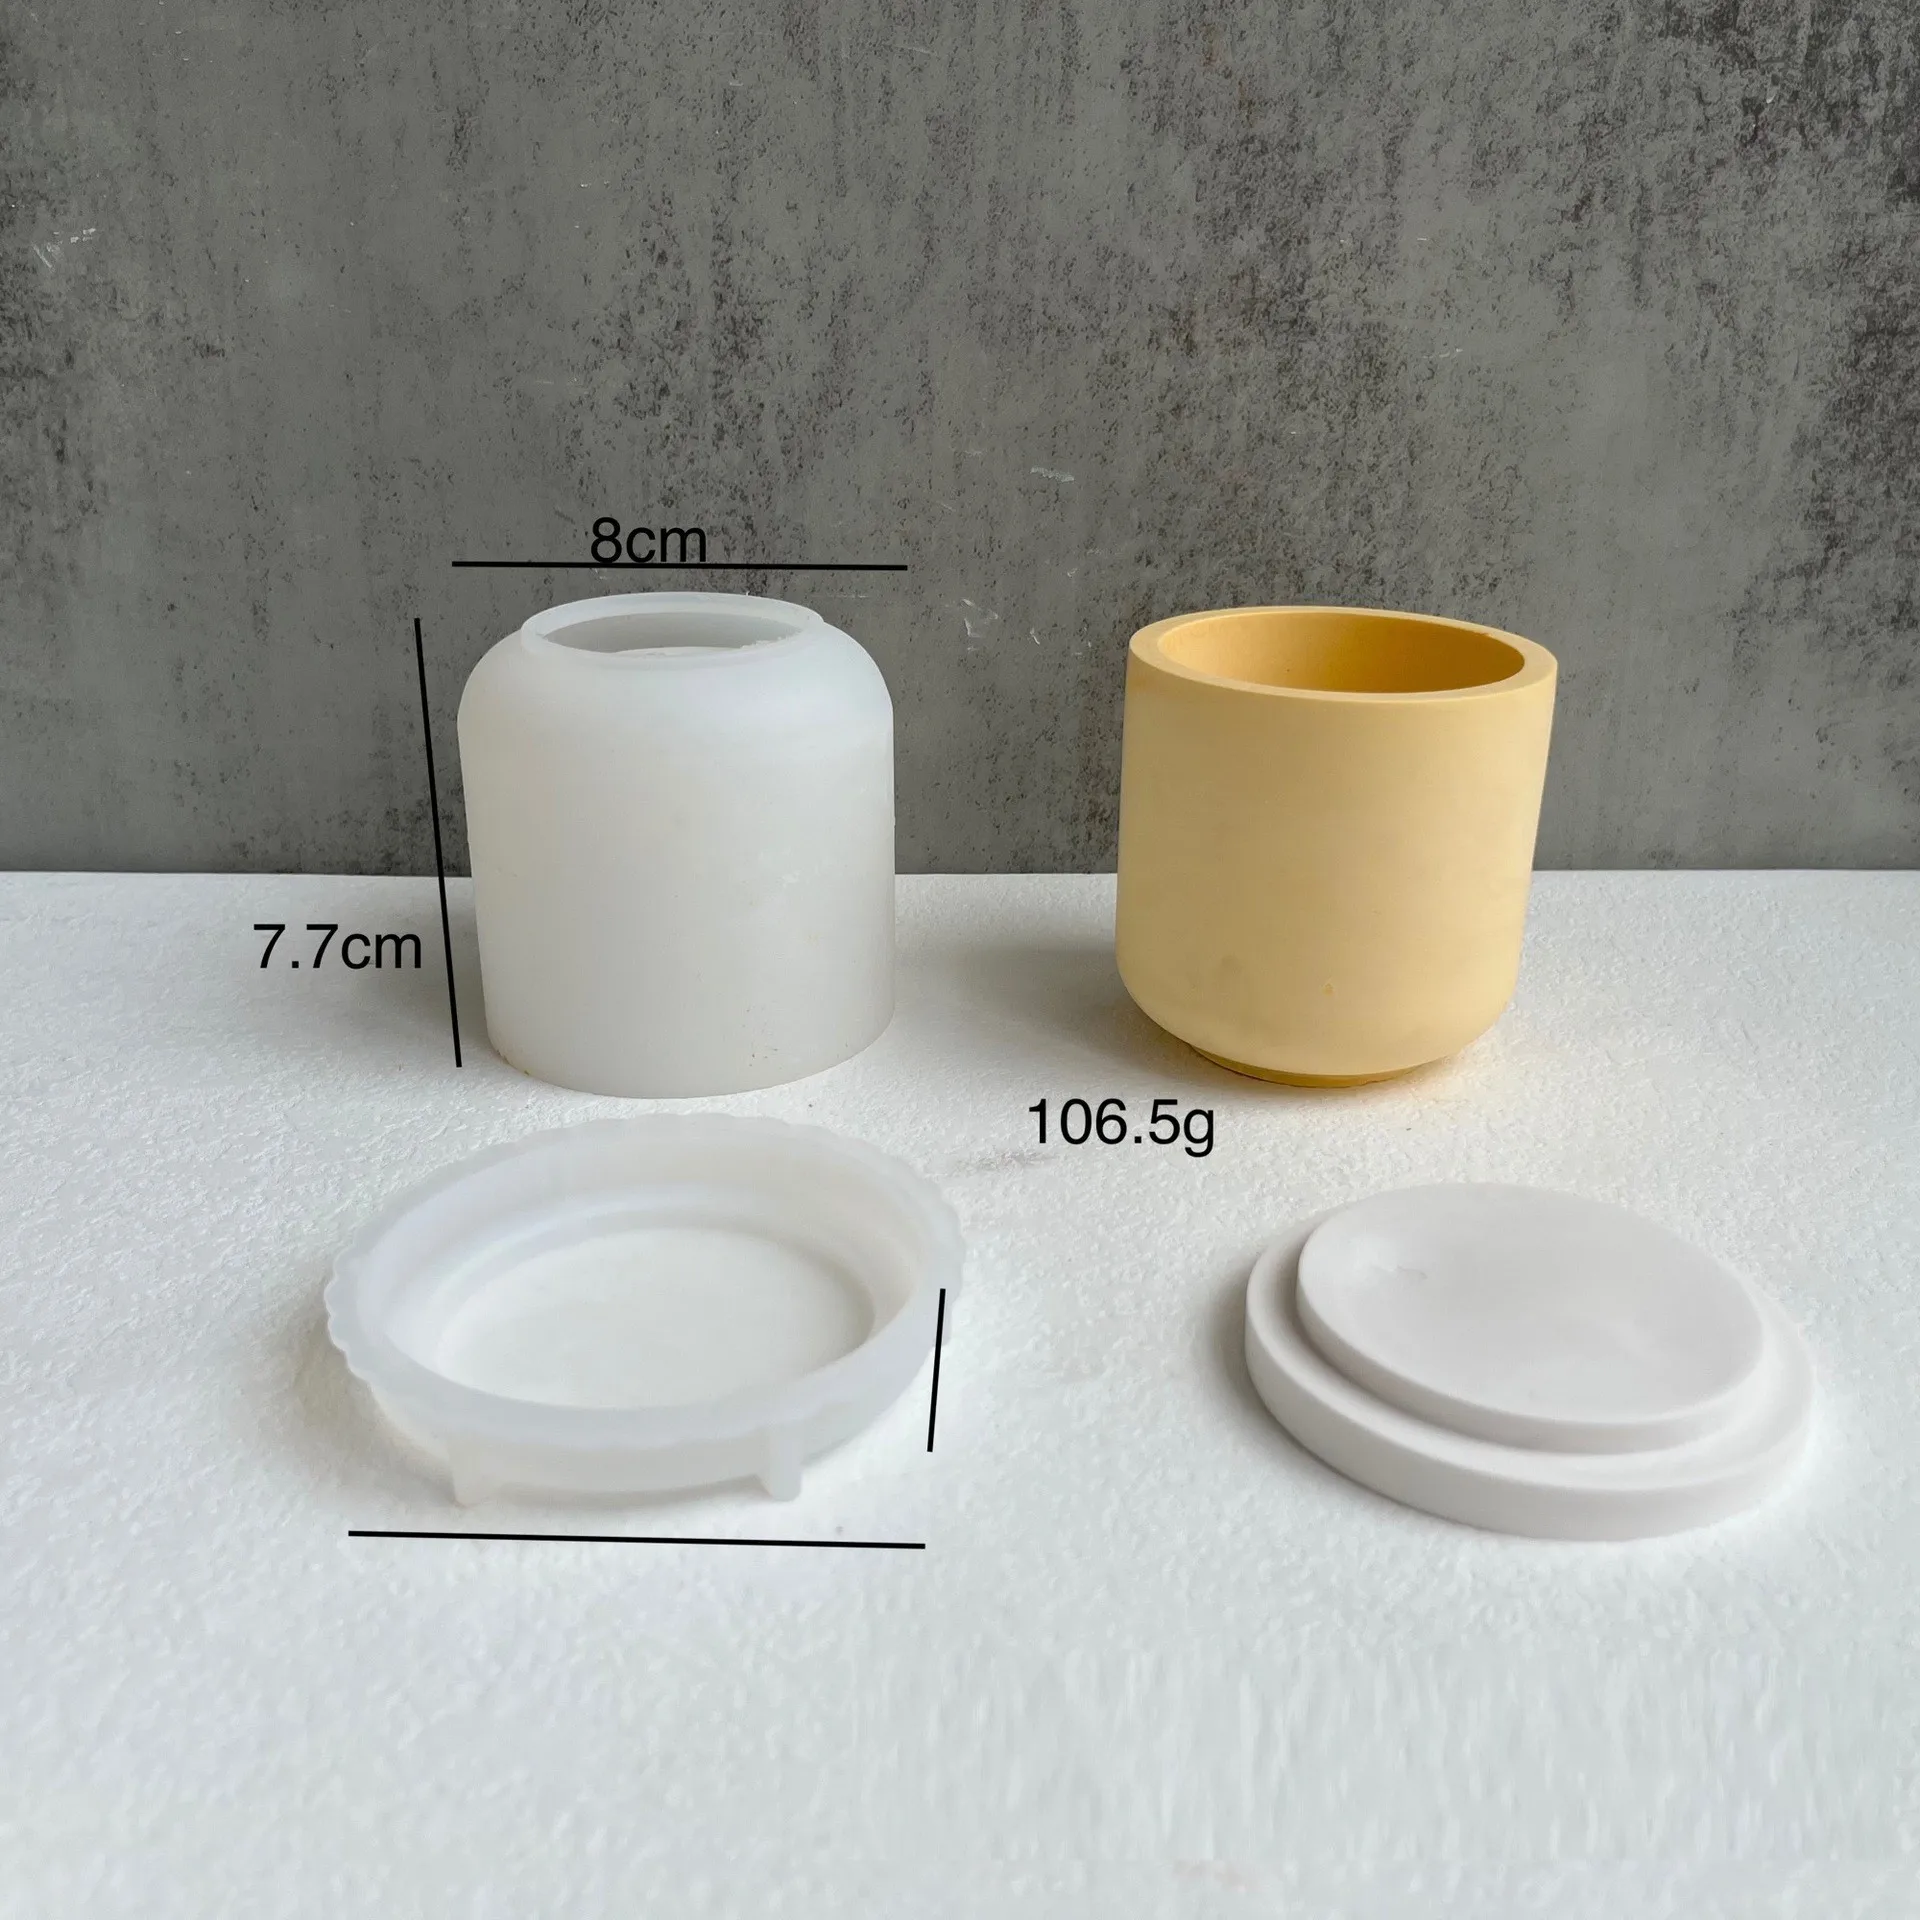 Molde de silicona swirl para hacer recipientes con tapa para velas.